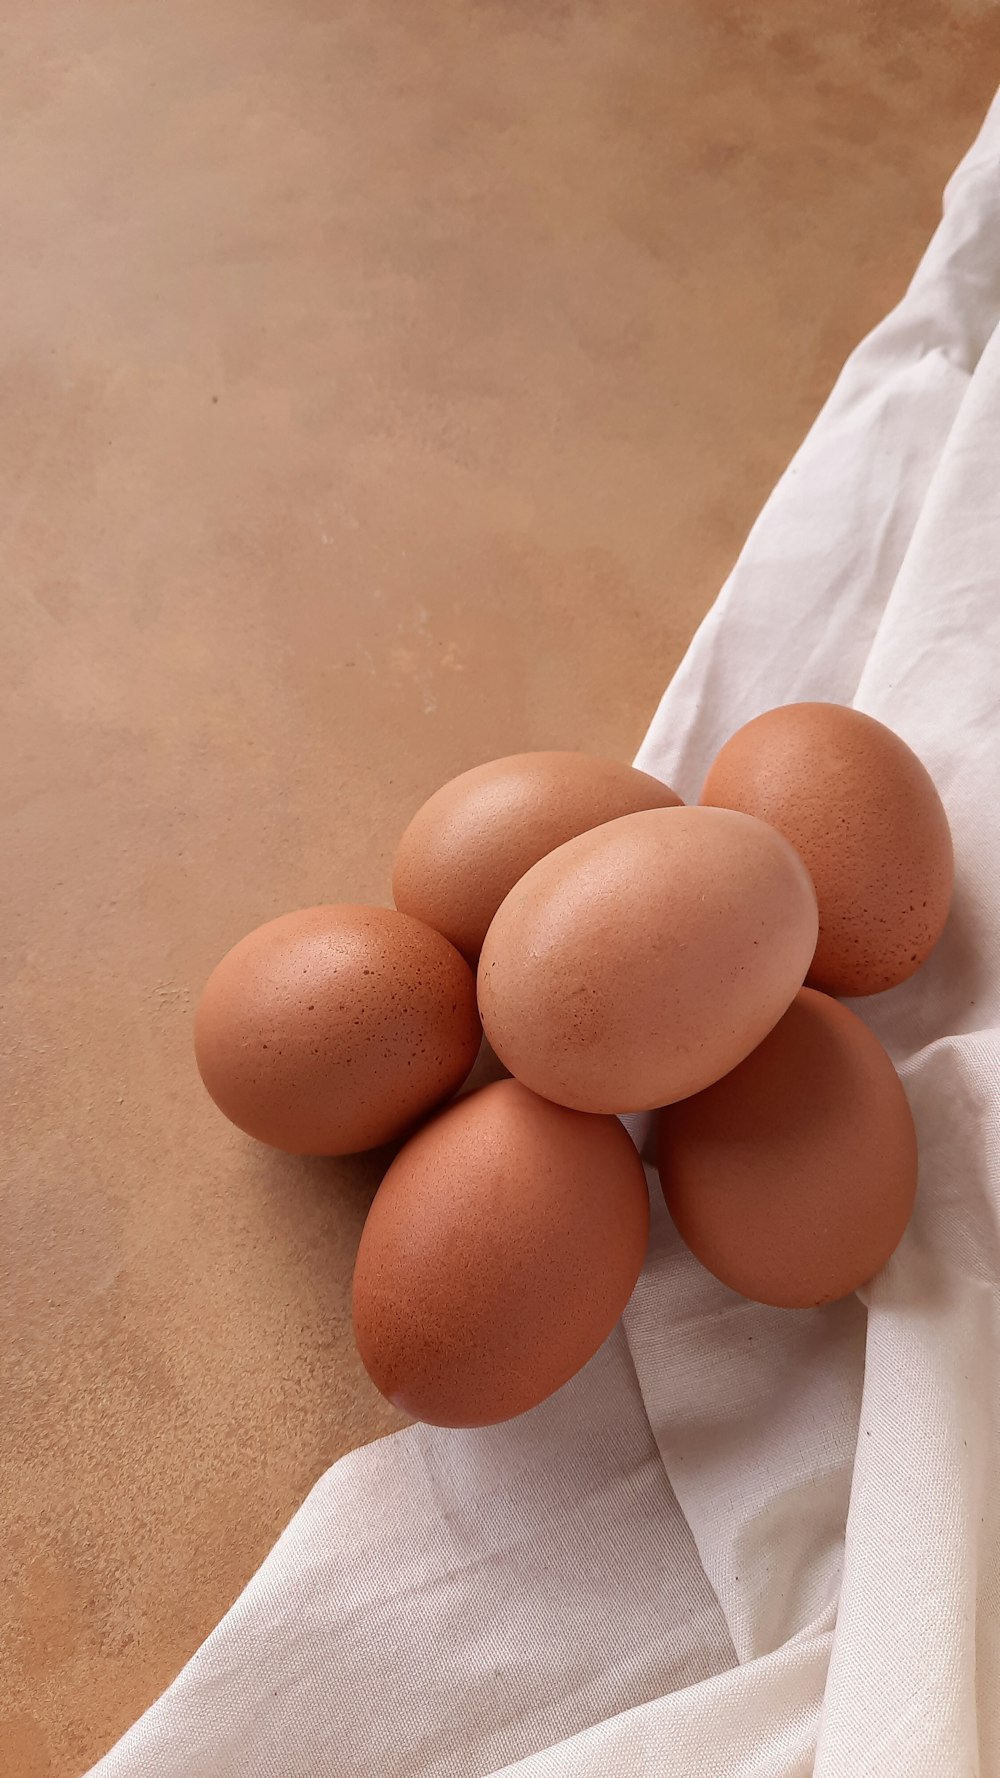 ein Haufen Eier auf einem weißen Tuch